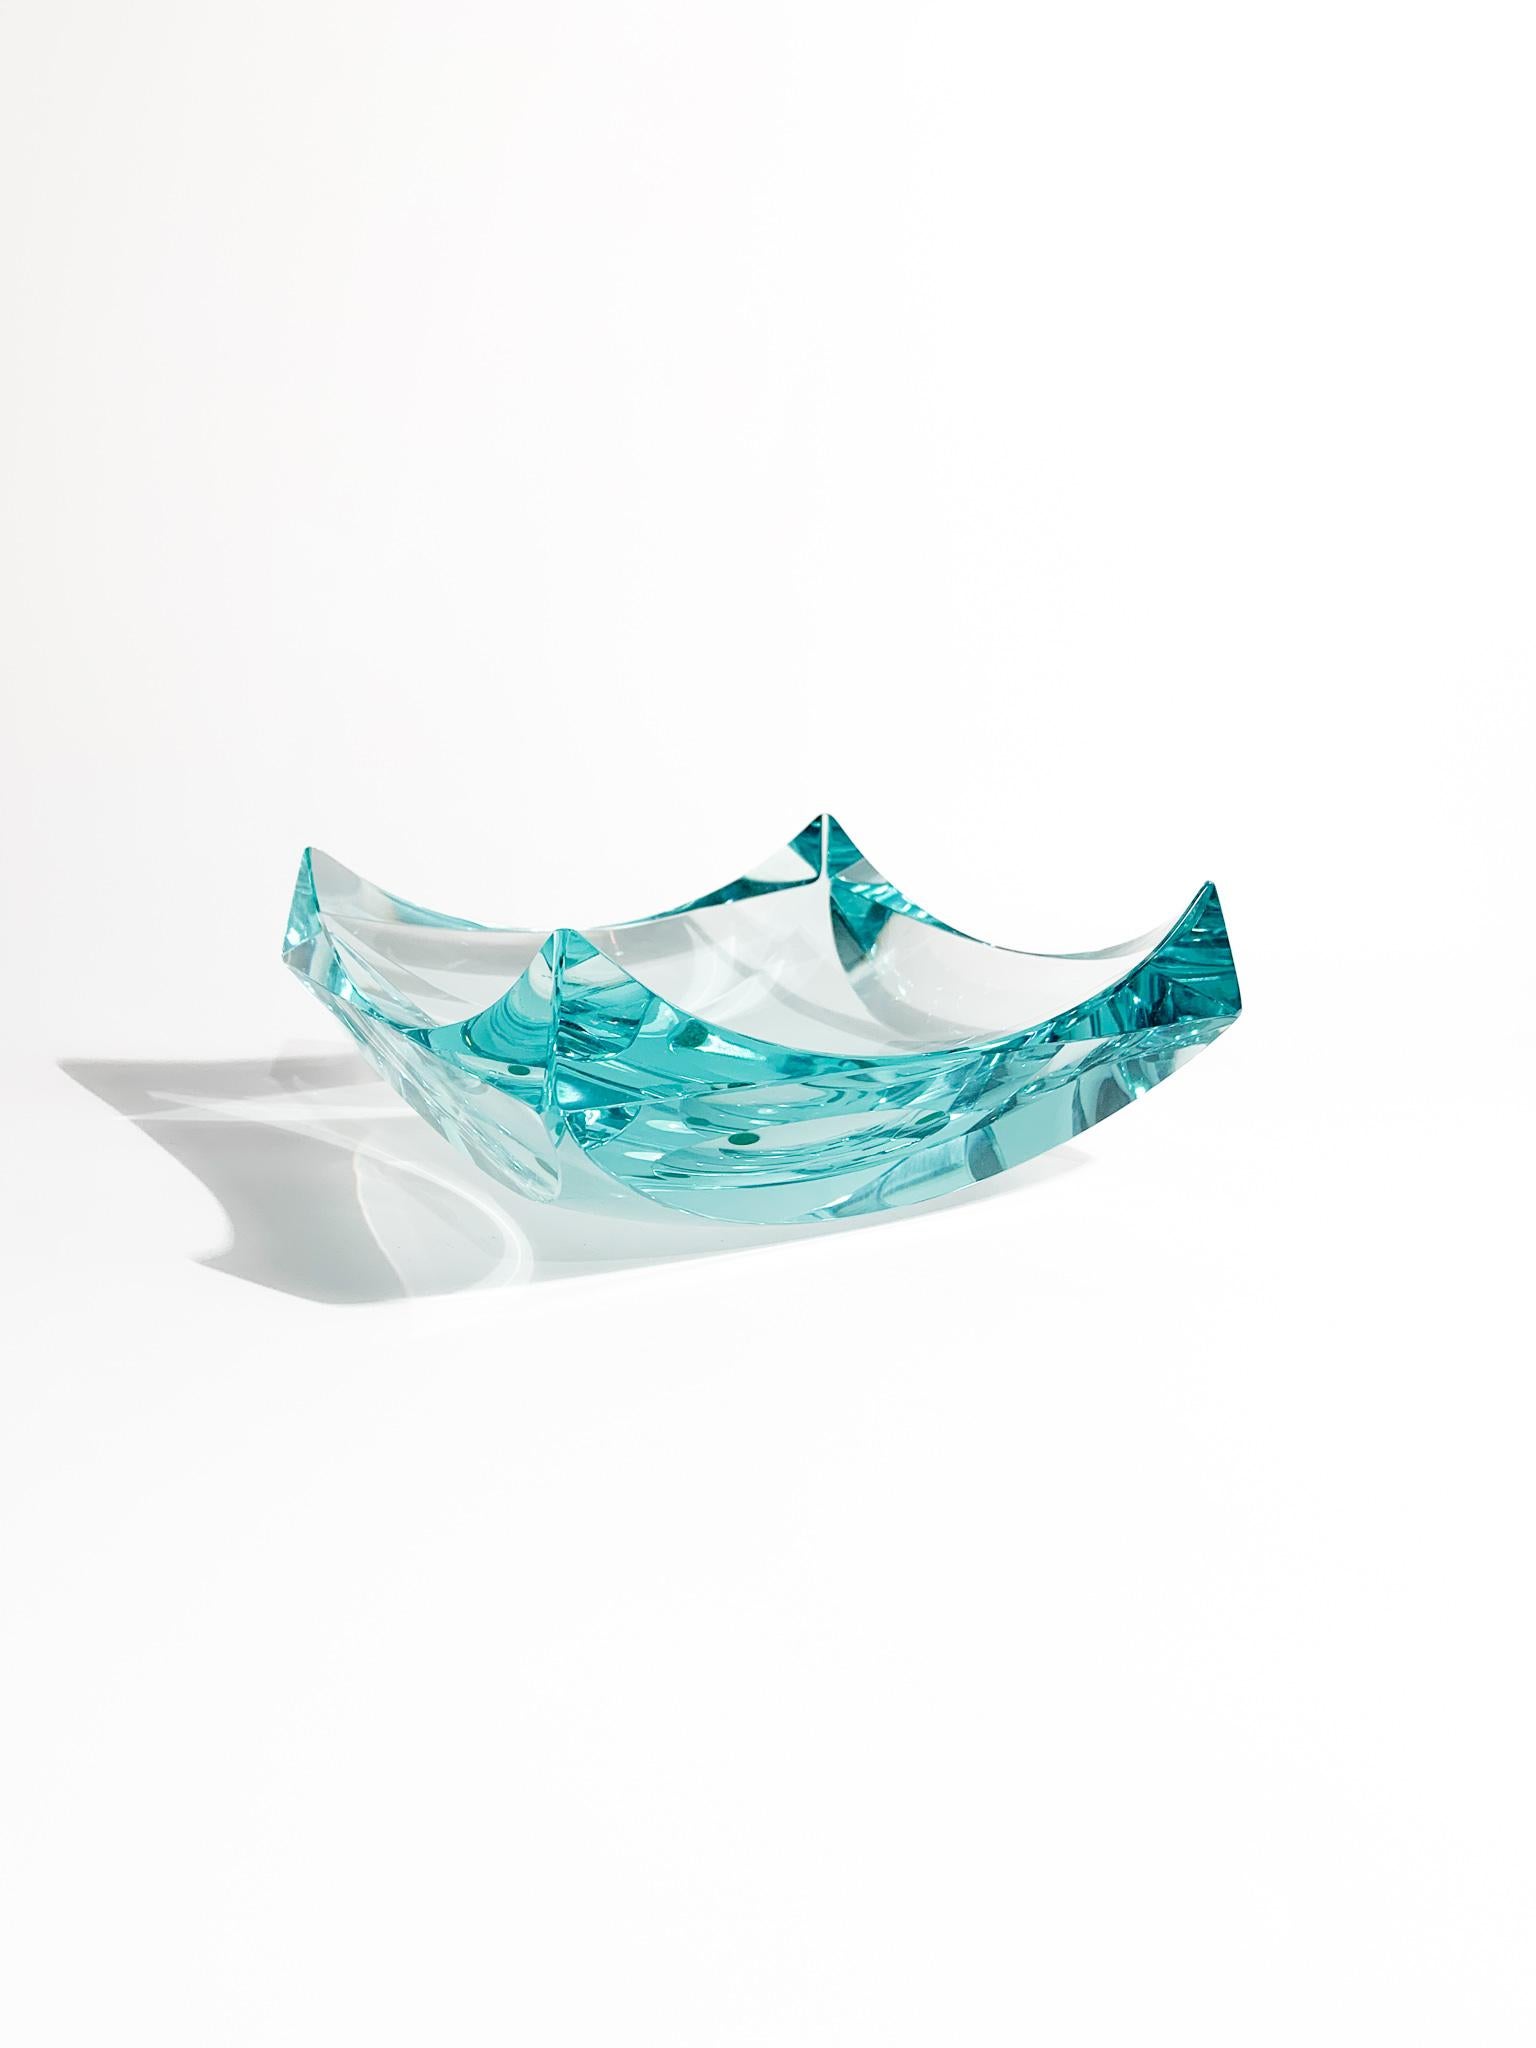 Aschenbecher oder Taschentablett aus blauem Glas, dessen Herstellung Fontana Arte in den 1970er Jahren zugeschrieben wird

Ø 17 cm h 8 cm